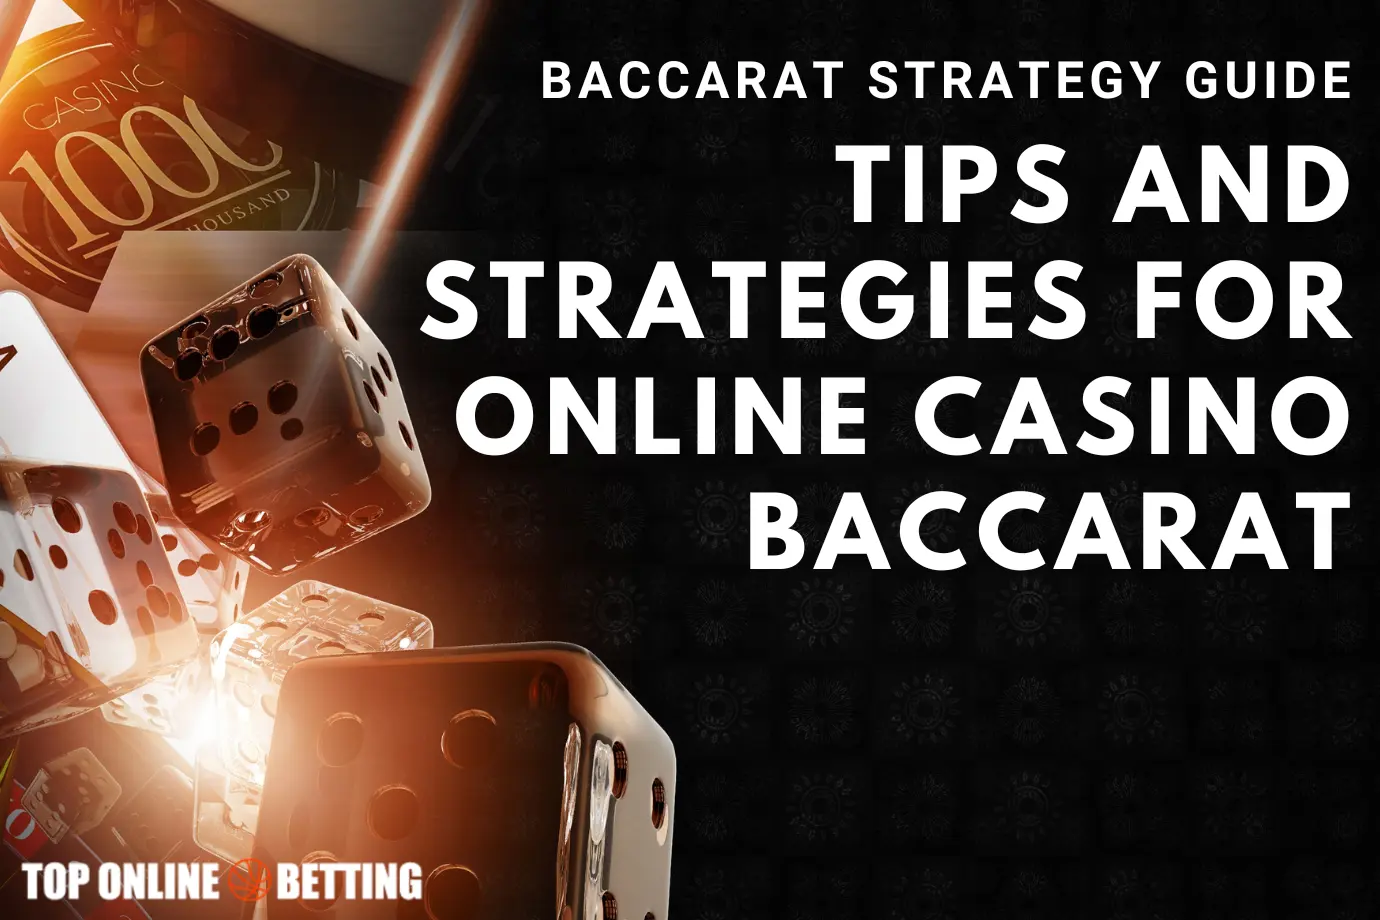 Panduan Strategi Baccarat Tips dan Strategi untuk Baccarat Kasino Online